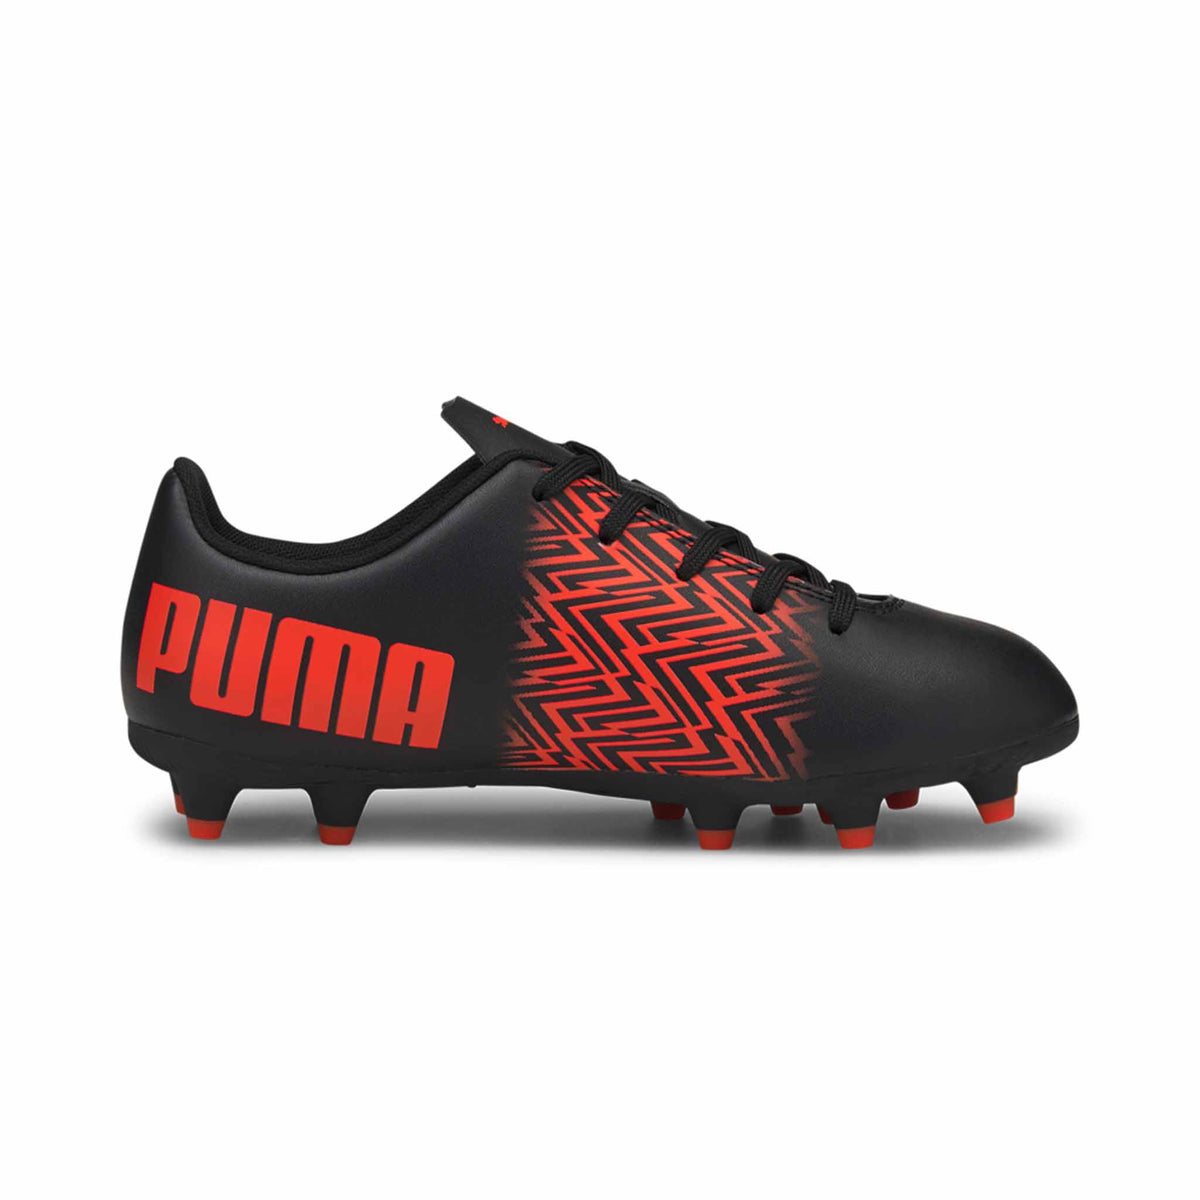 Puma Tacto FG/AG Junior chaussures de soccer enfant Noir / Rouge côté intérieur